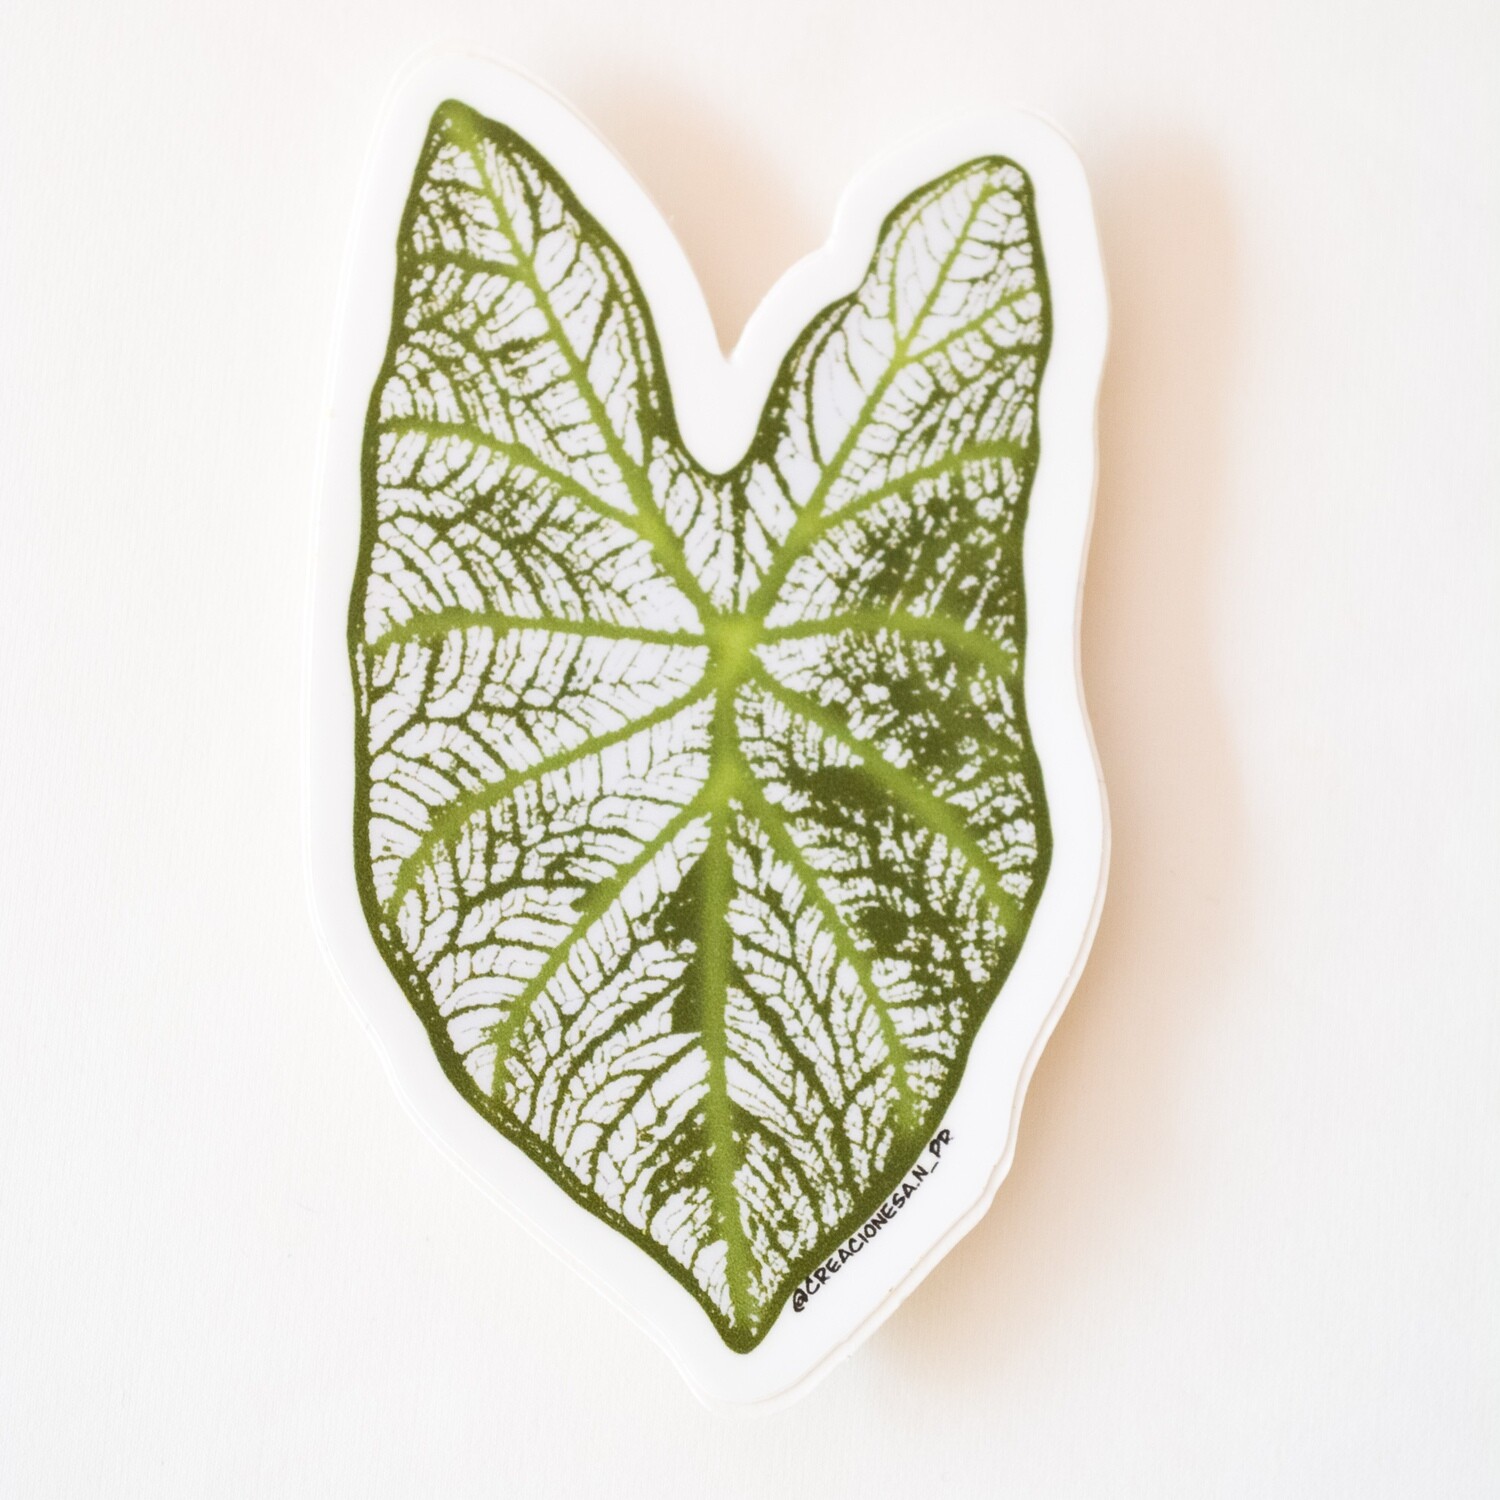 Caladium leaf sticker